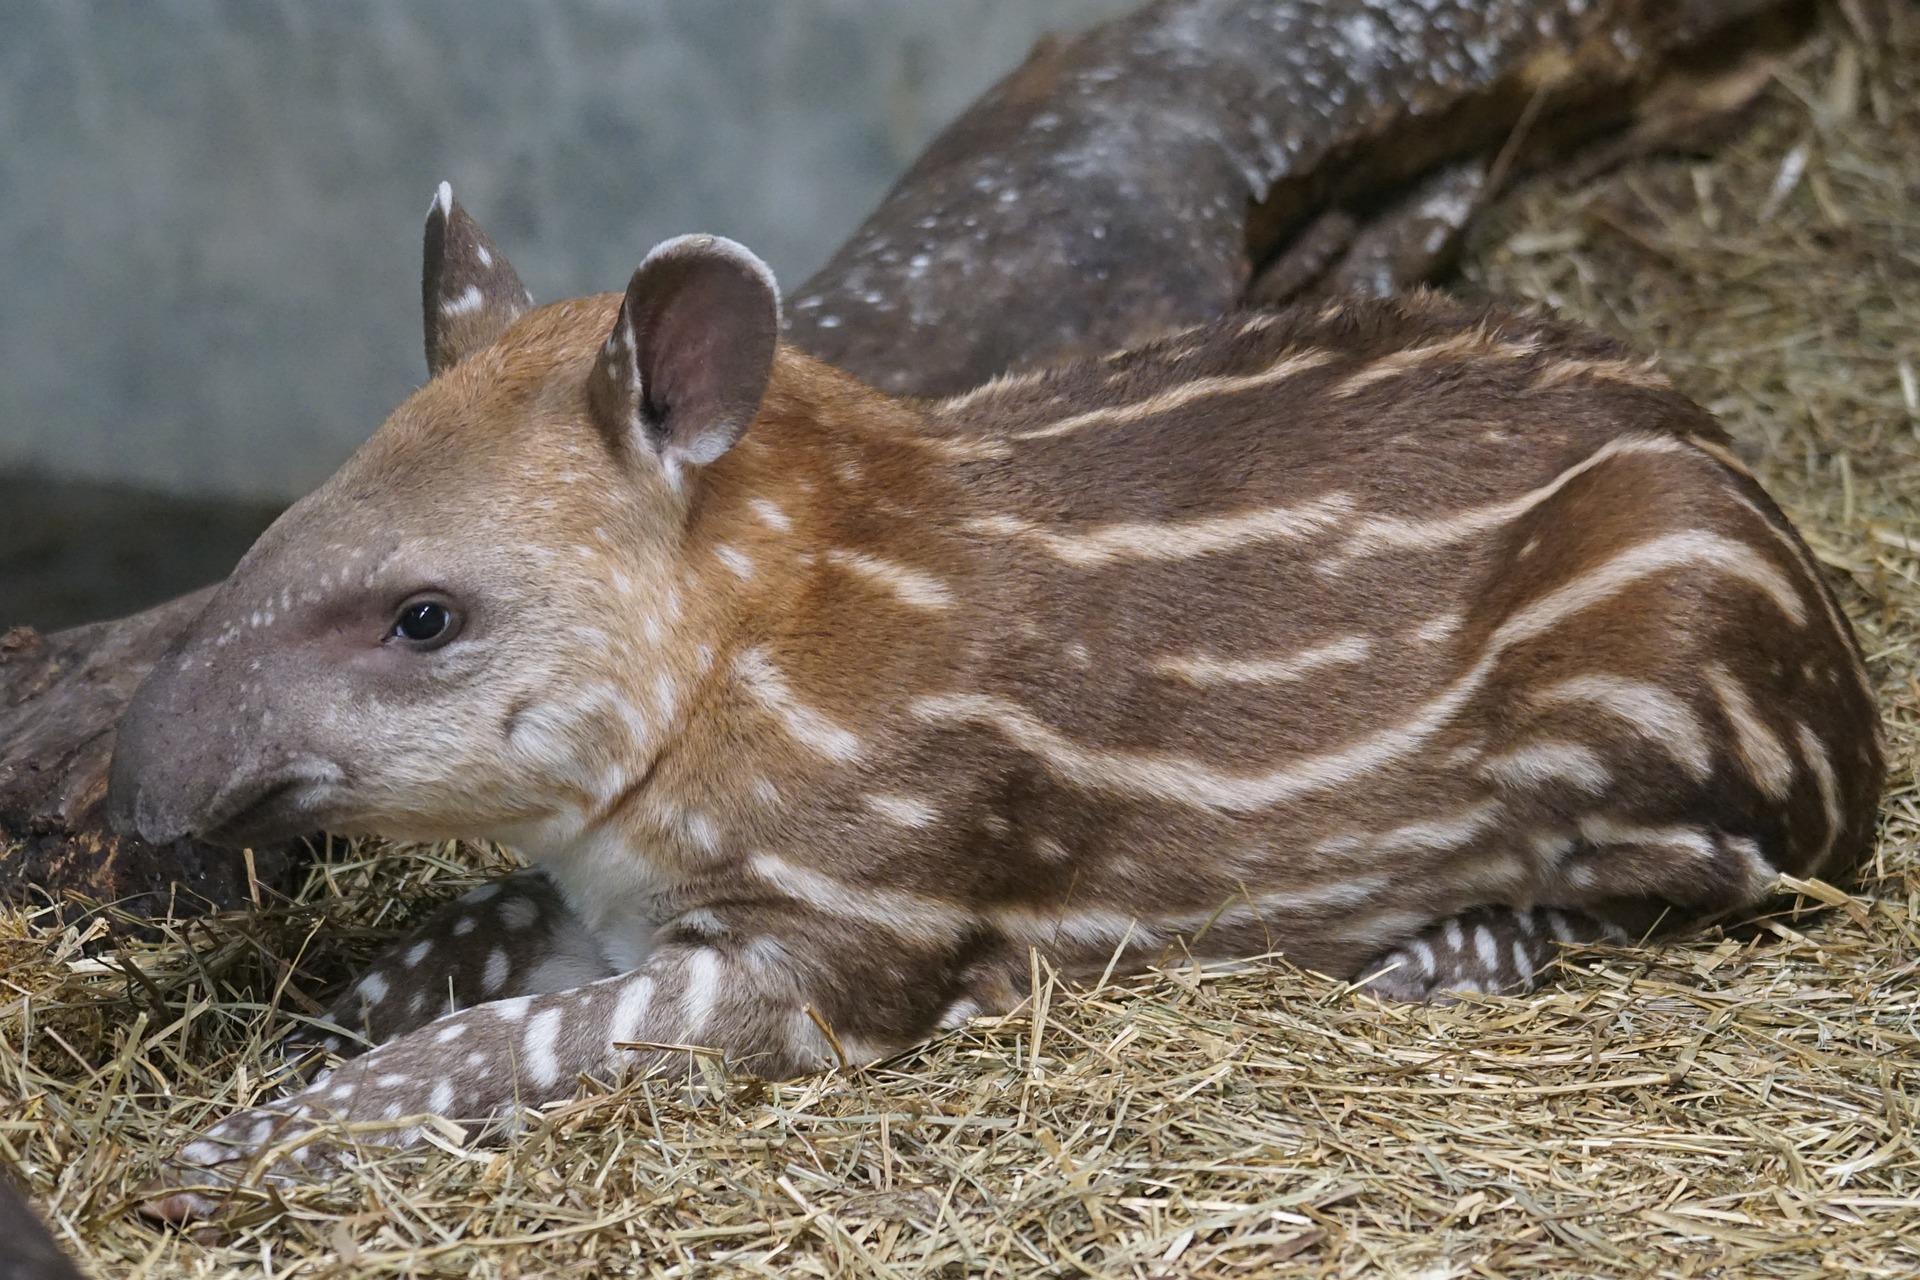 Young tapir